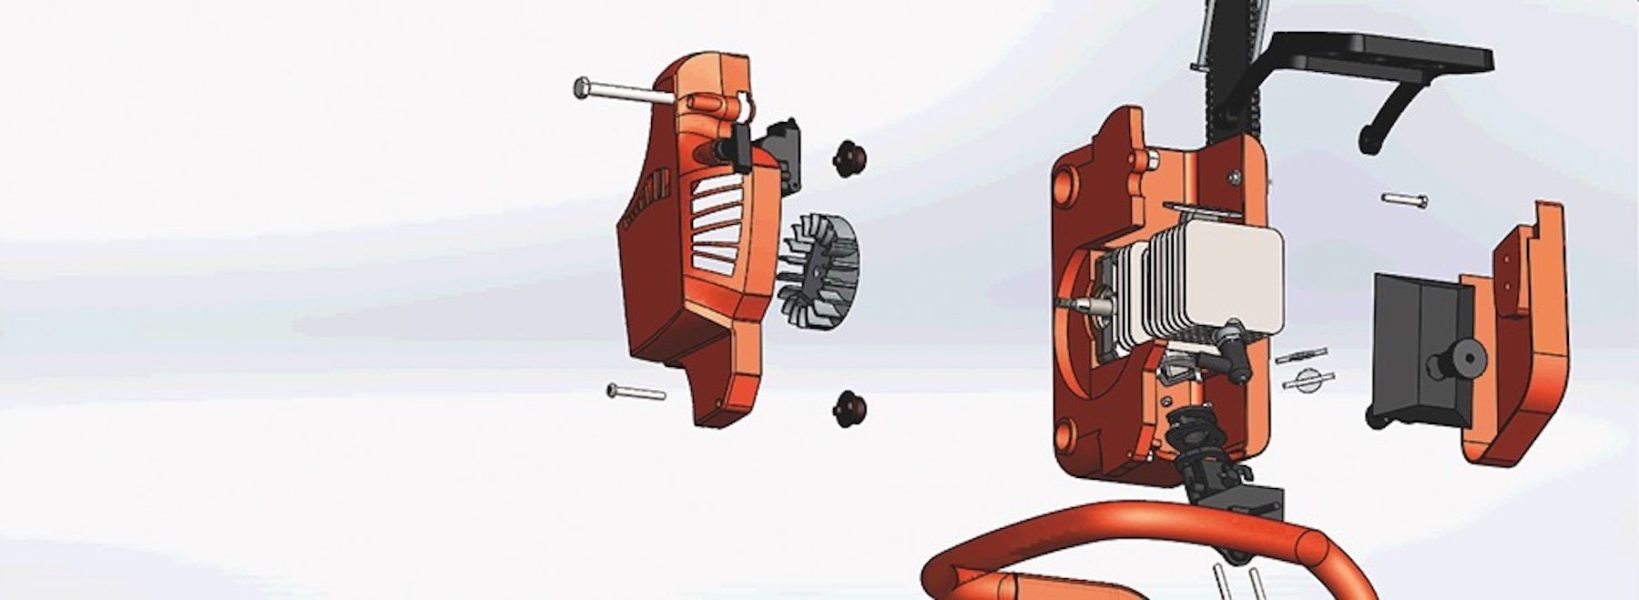 Modelação de uma motoserra: frames de animação